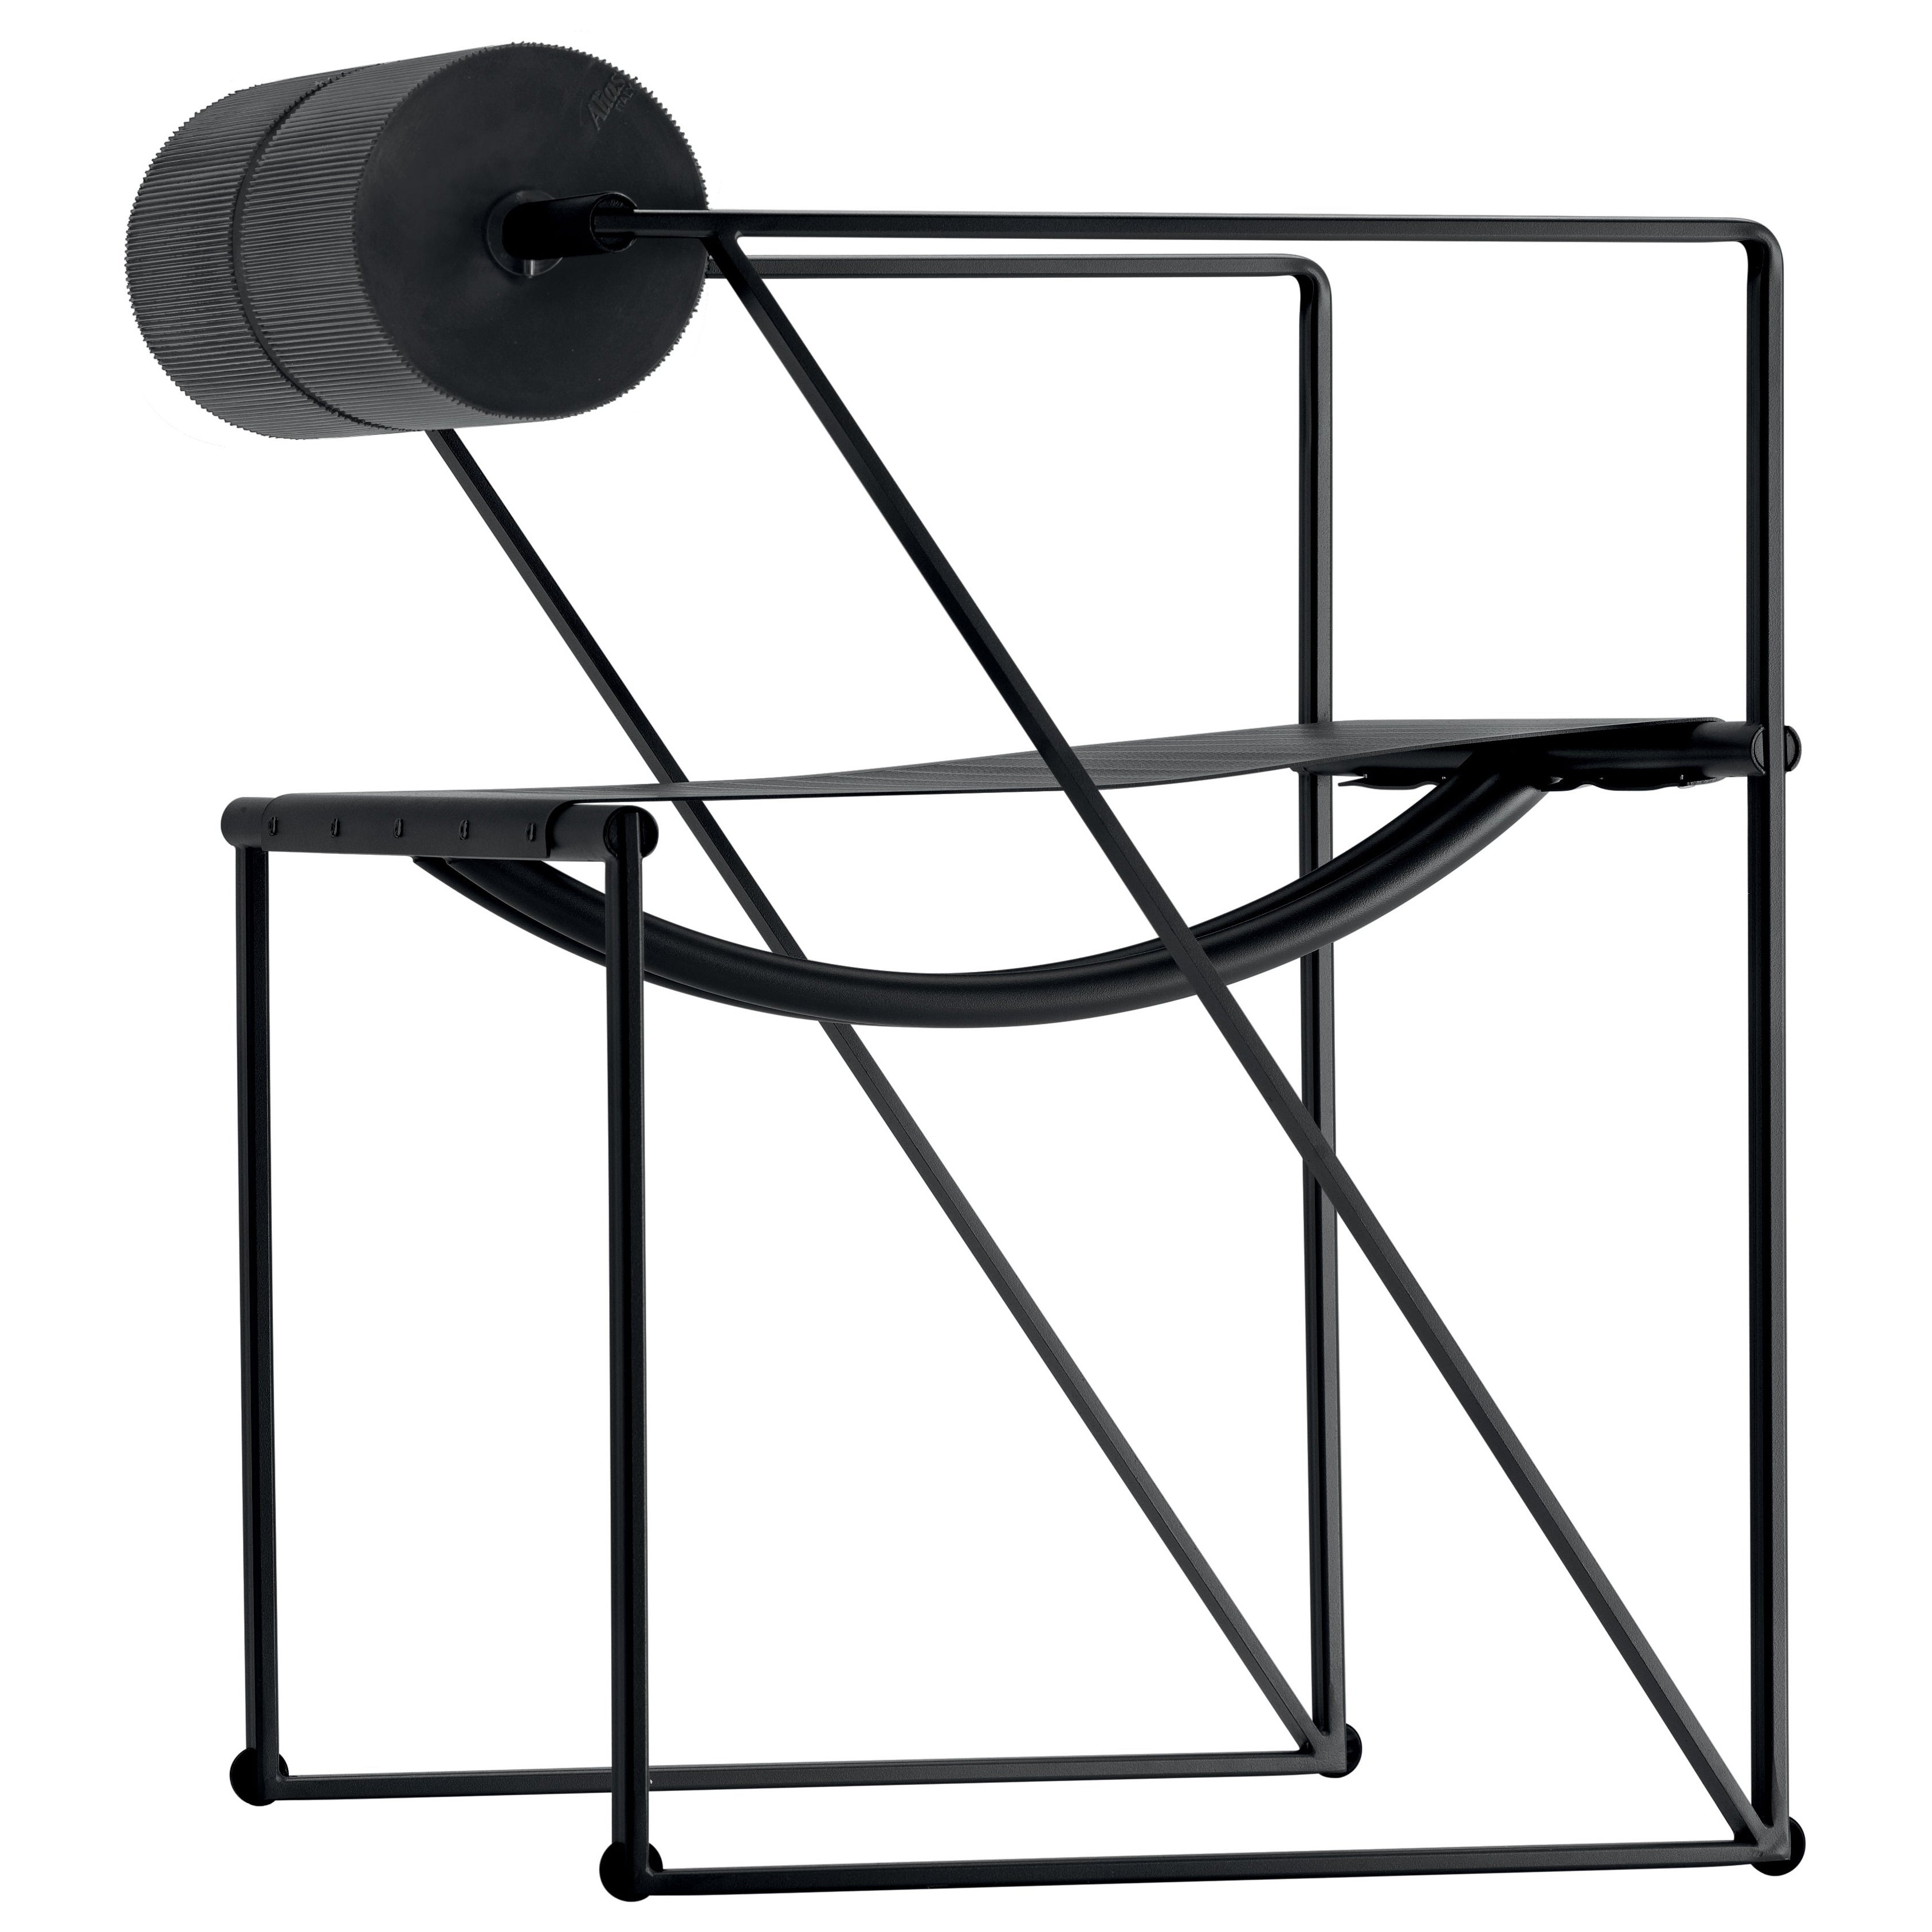 Alias 602 Seconda-Stuhl mit Armlehnen aus schwarzem Stahlblech und lackiertem Rahmen